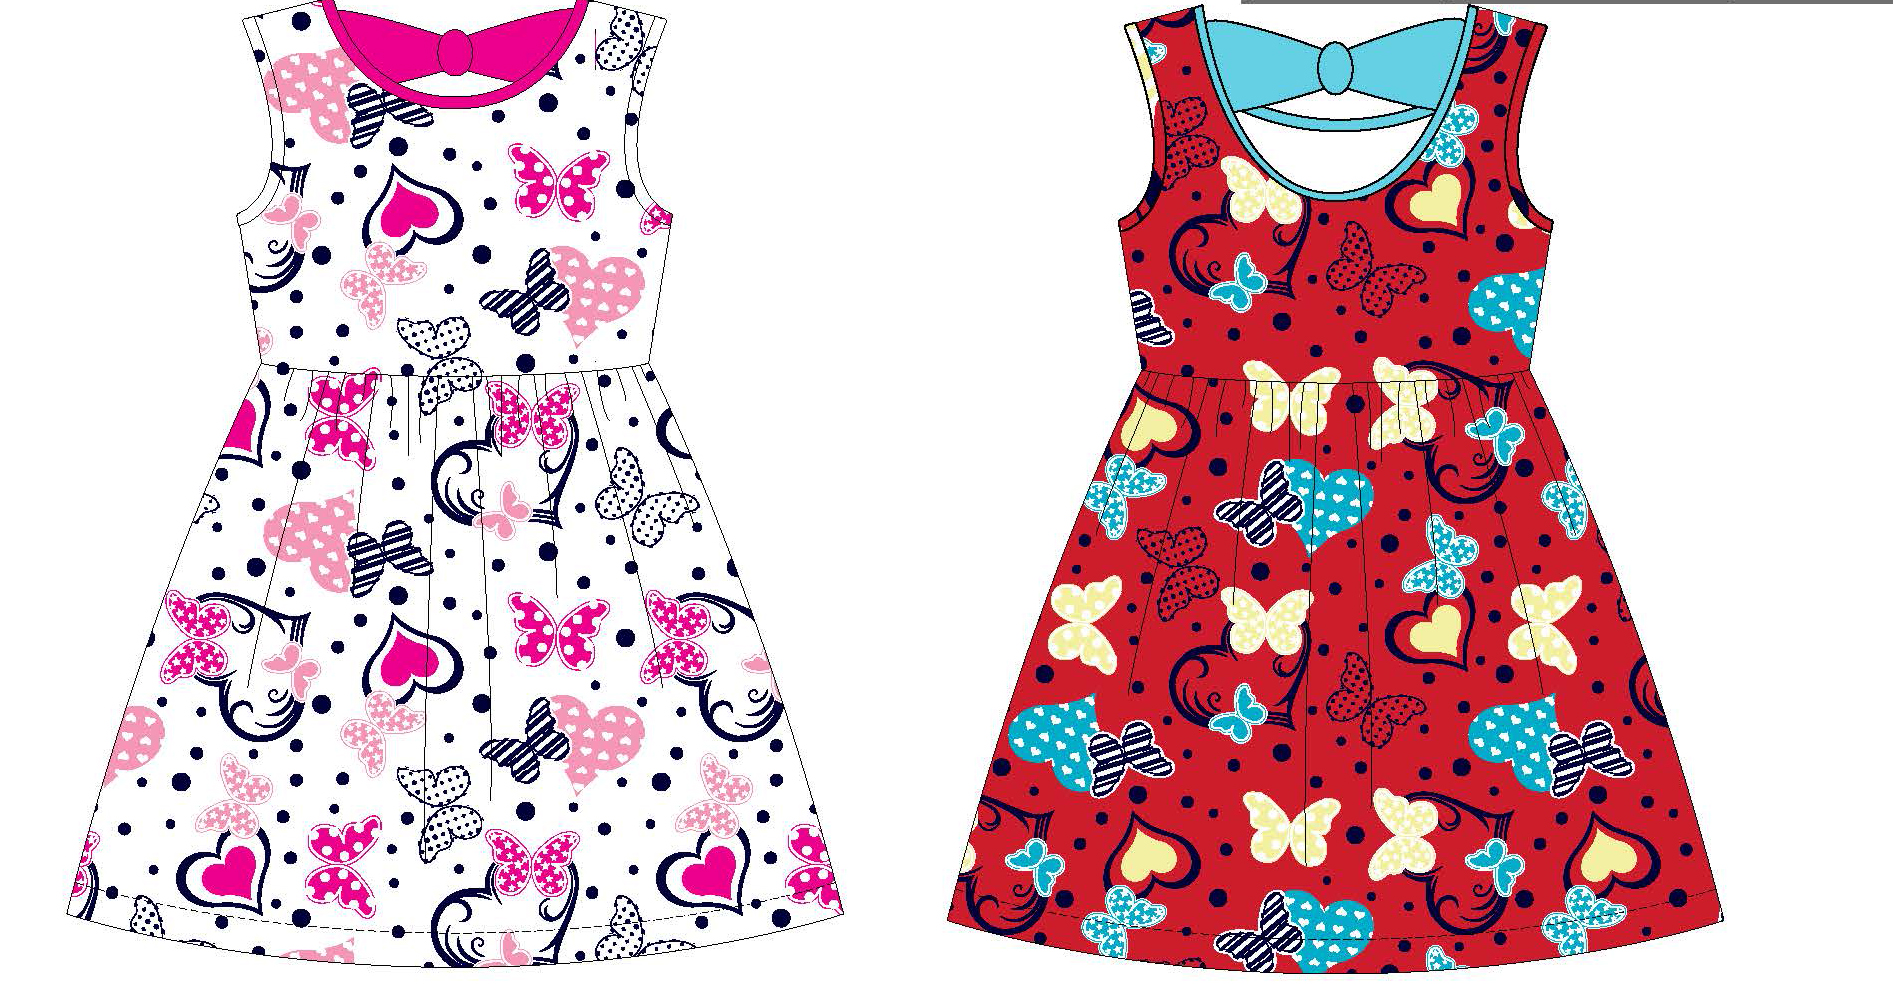 Girl's Sleeveless Knit Swing DRESS w/ Butterfly & Heart Print - Size 4-6X